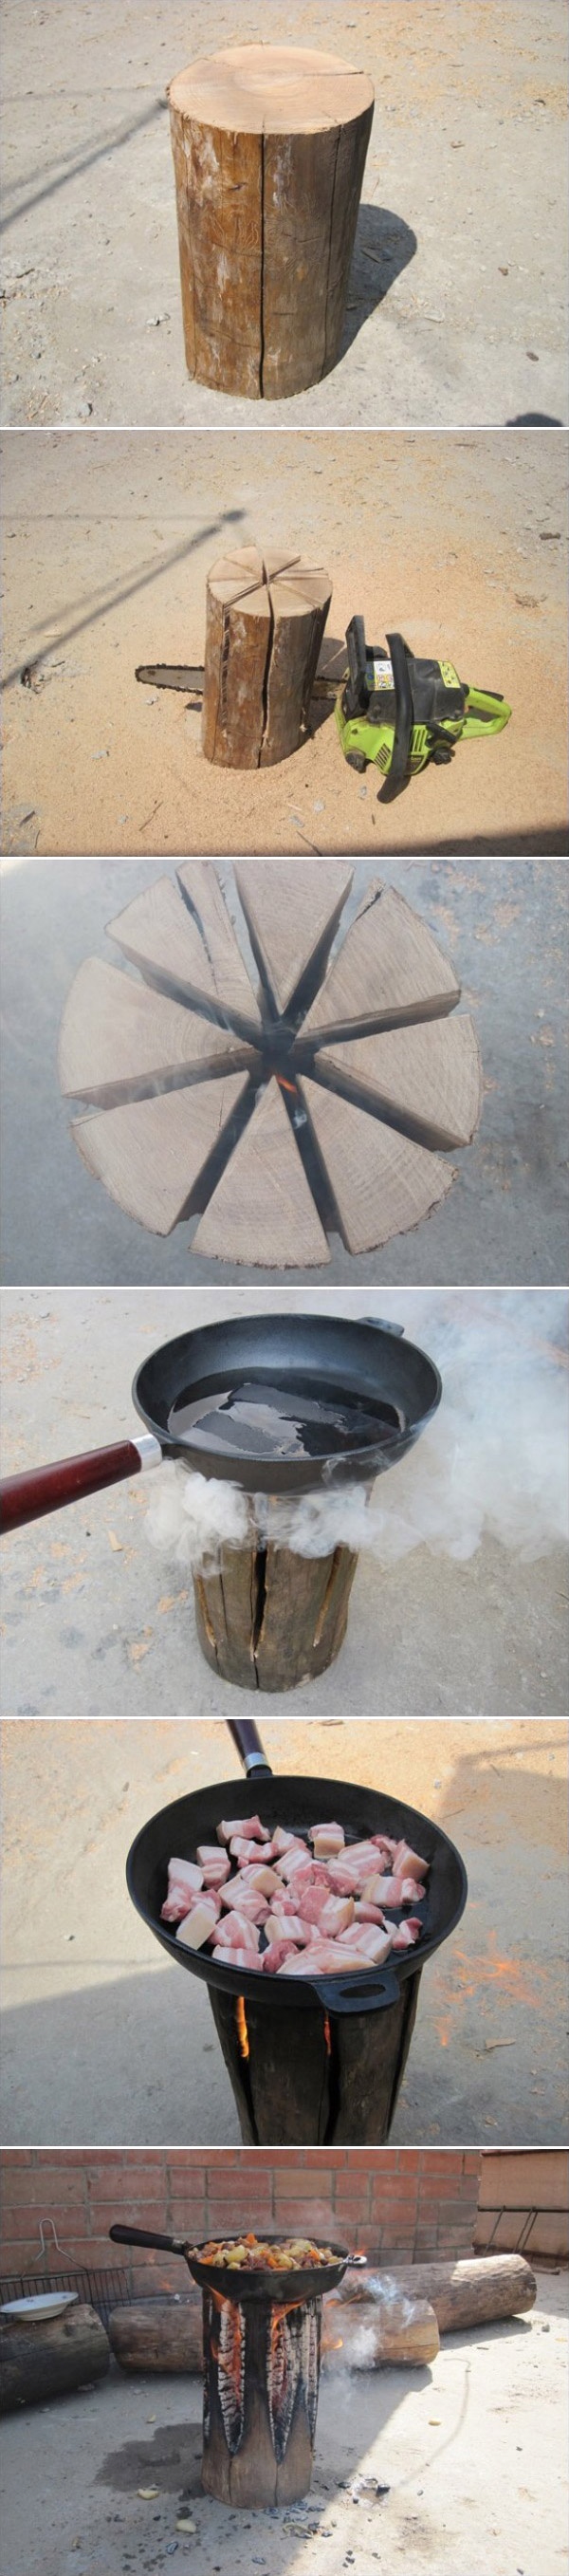 DIY-Wooden-log-Camp-Fire